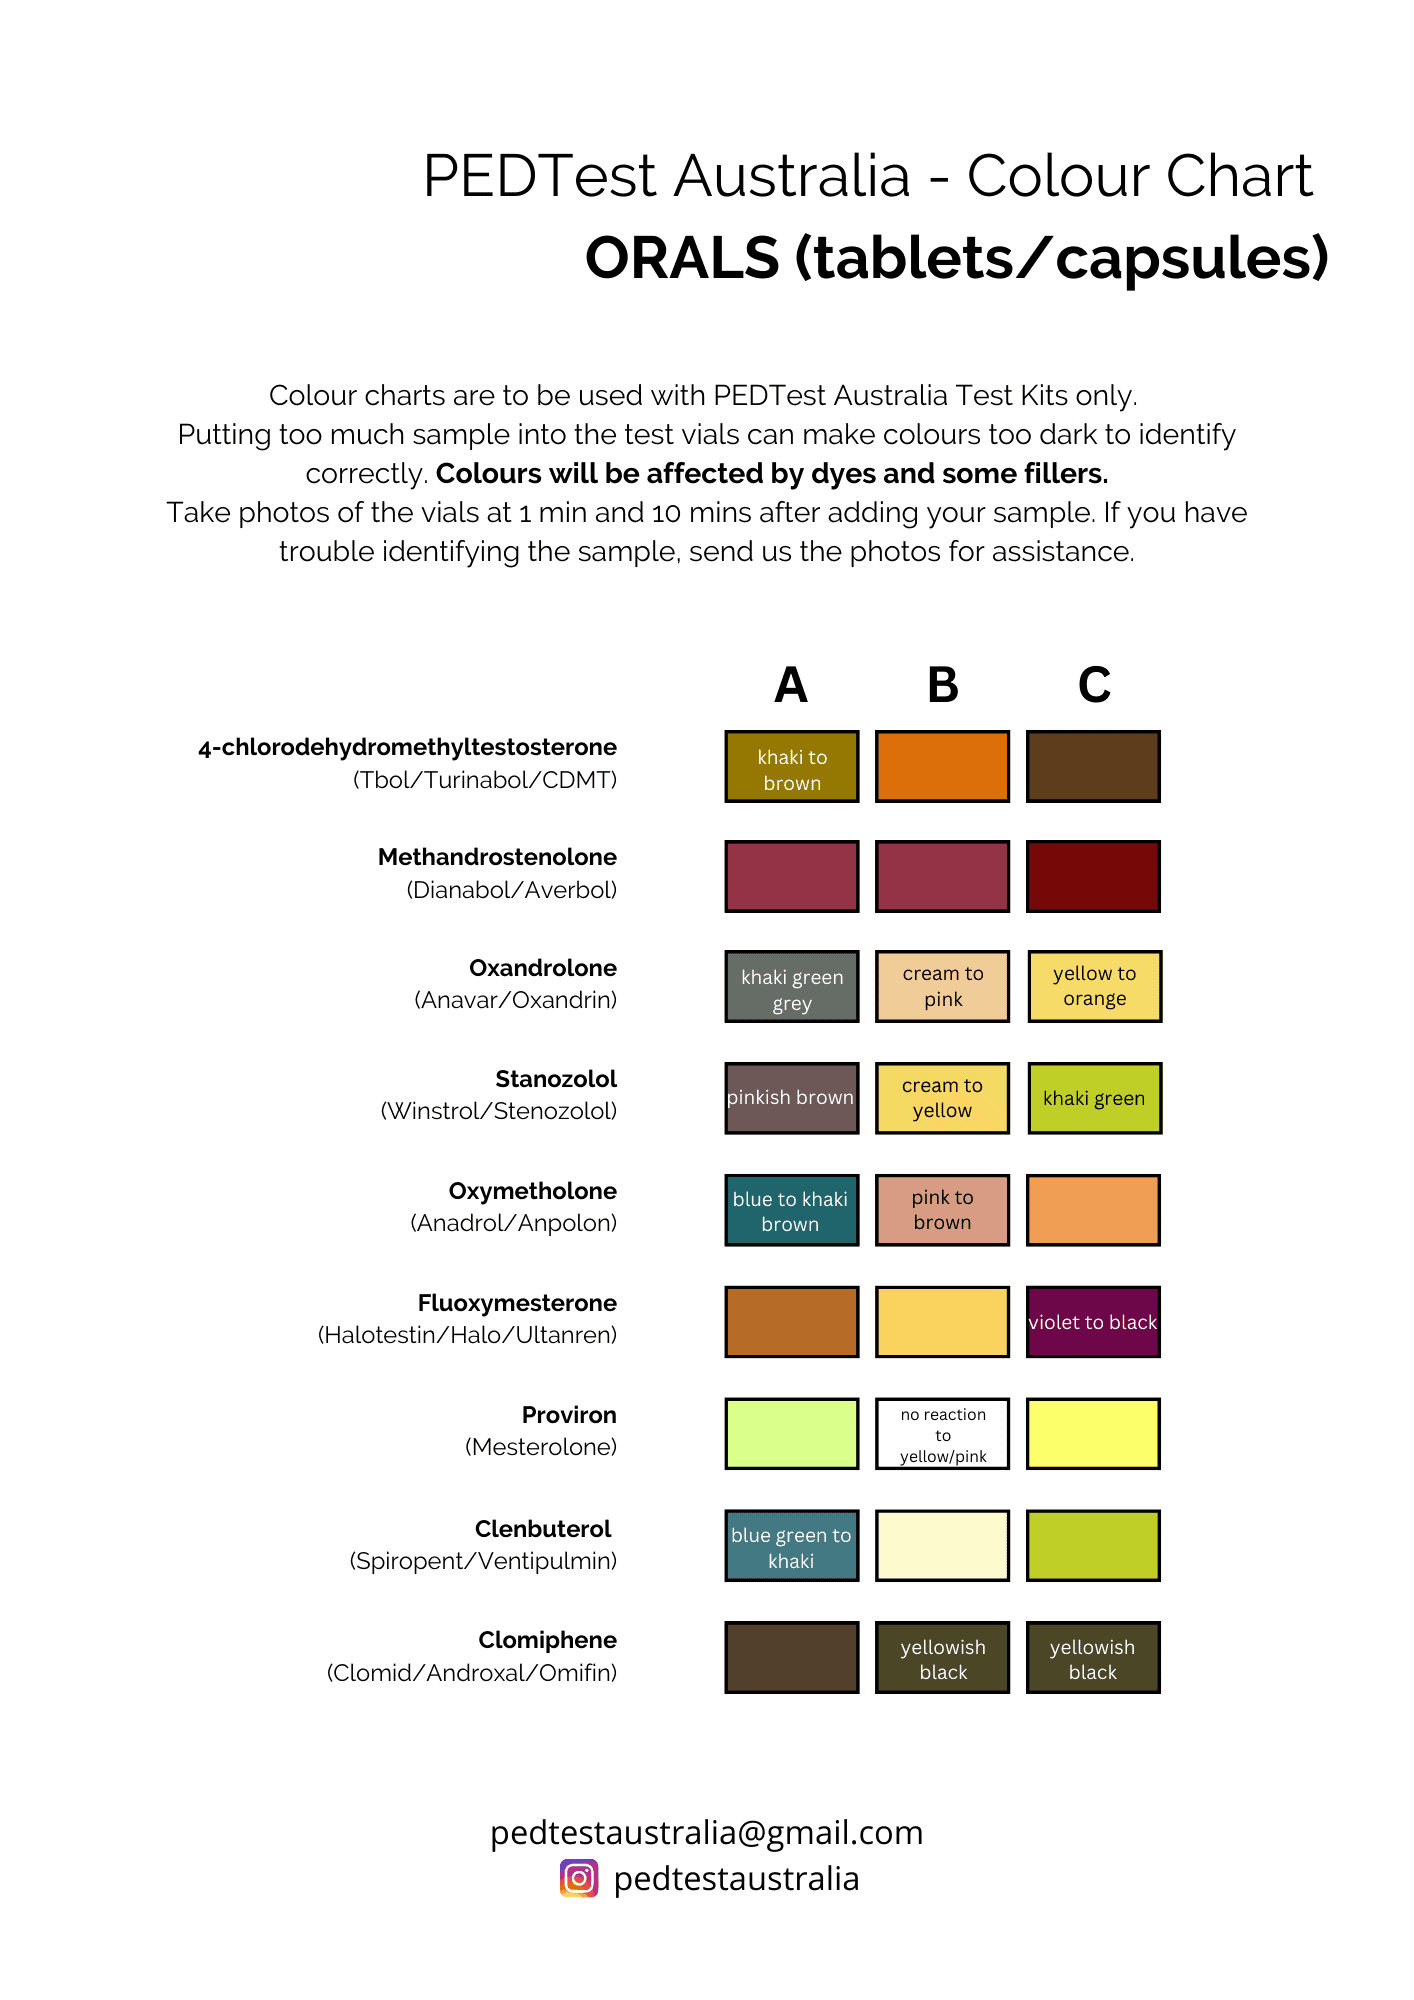 colour chart - orals